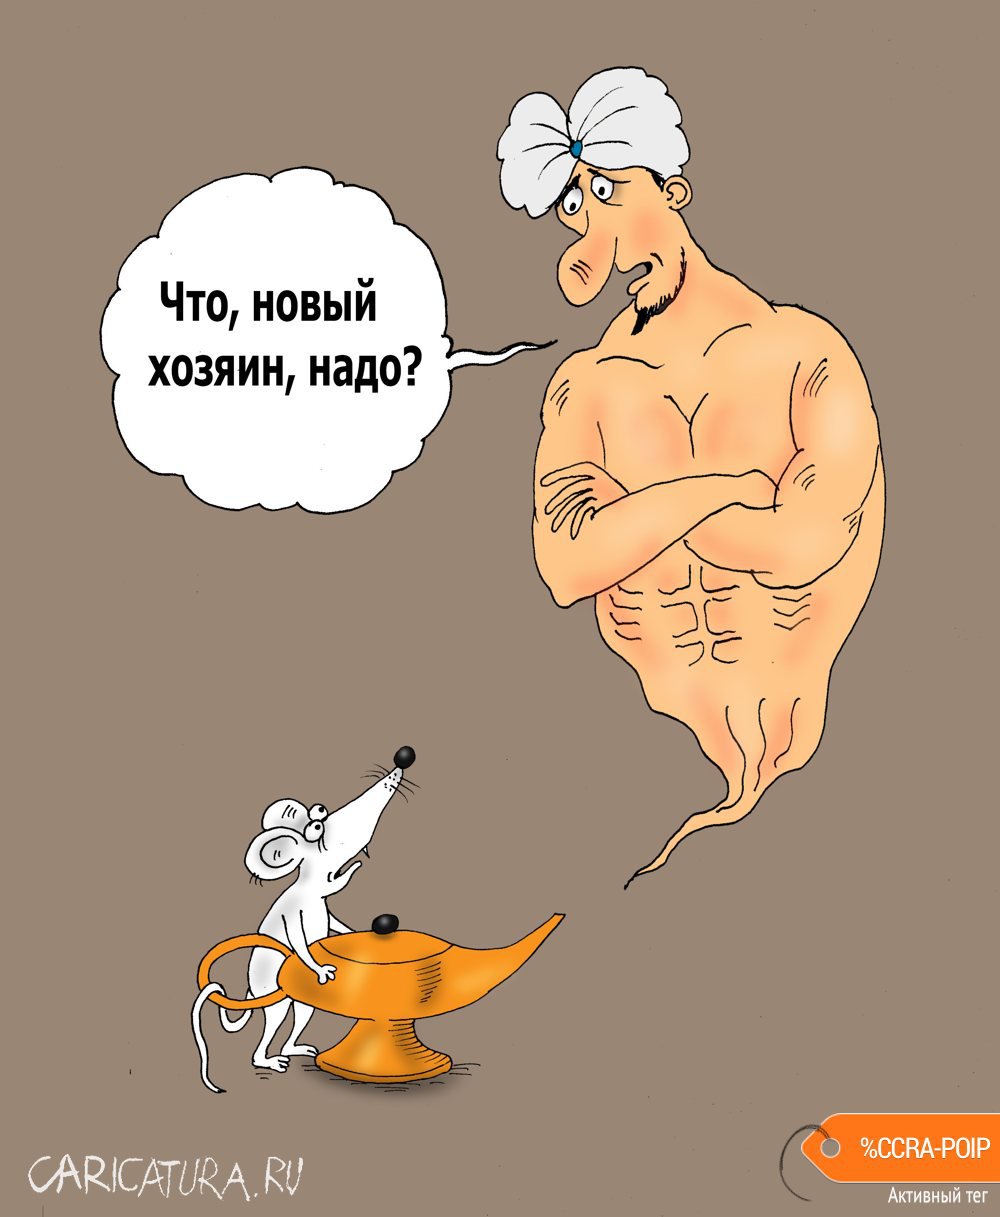 Карикатура "Лампа", Валерий Тарасенко